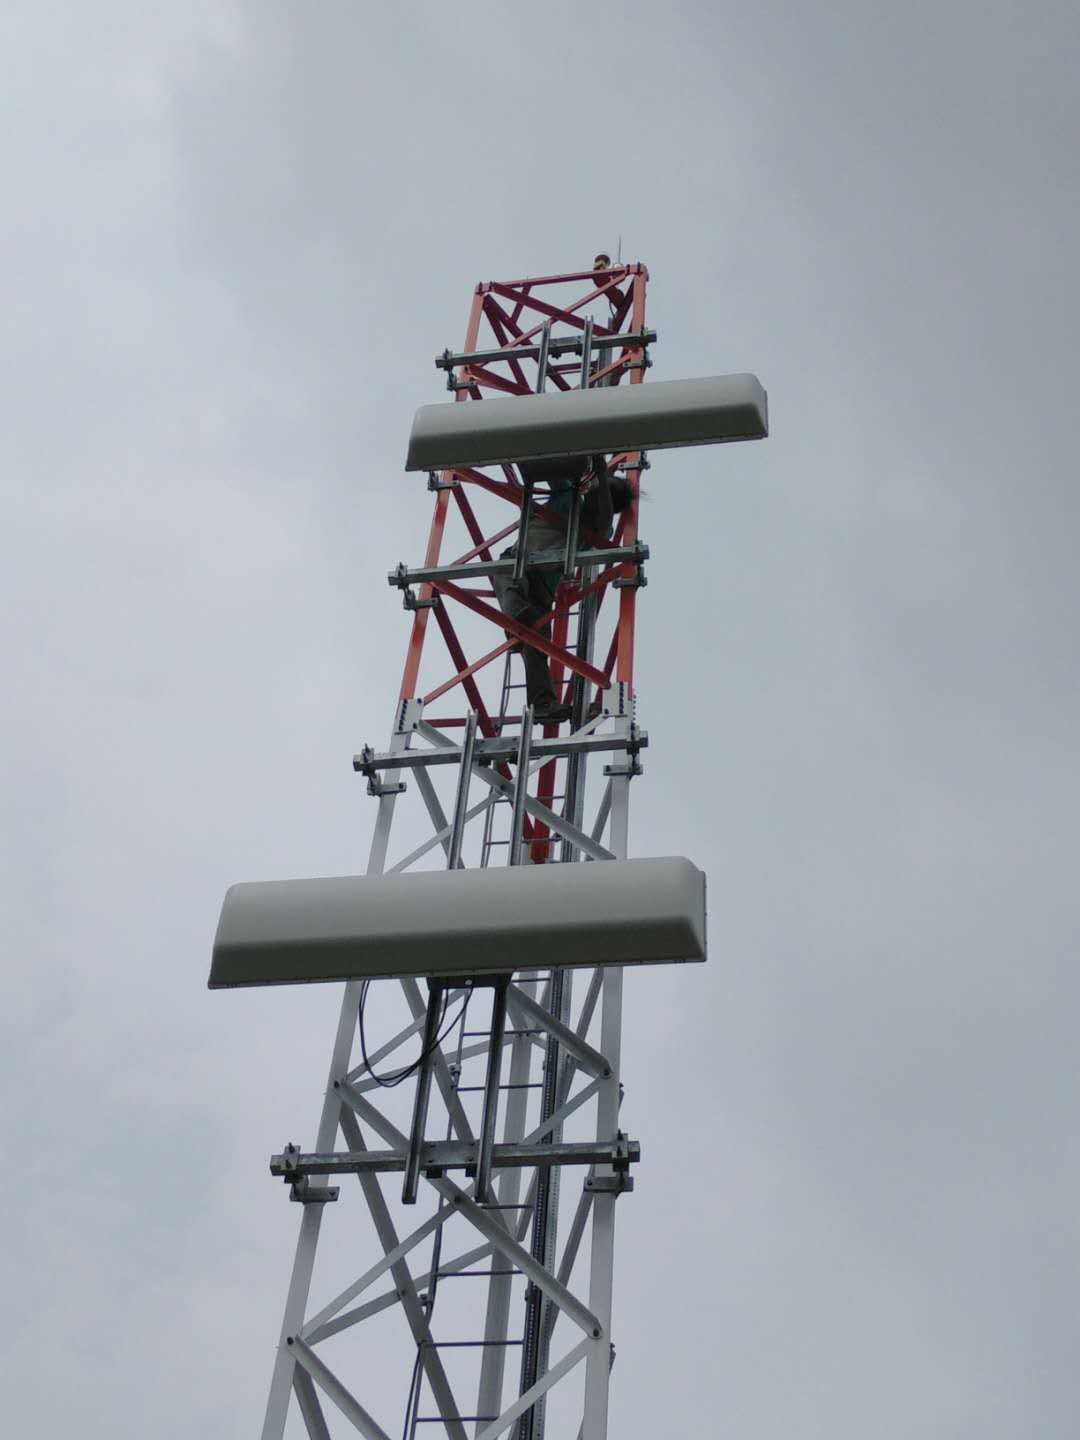 技术人员爬上铁塔调试设备.jpg